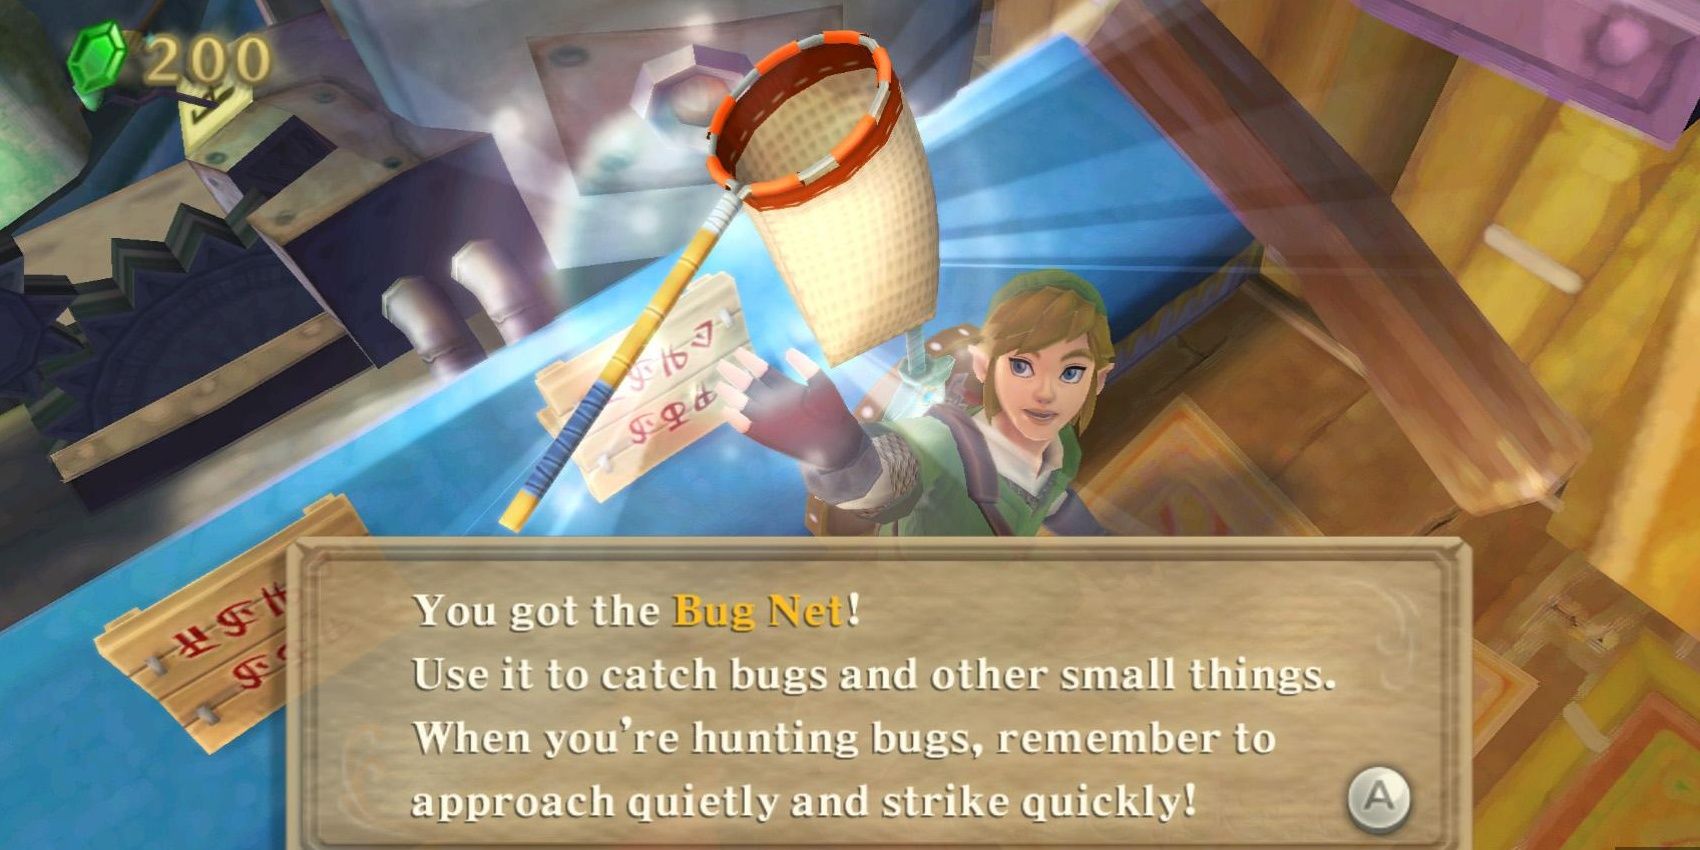 The Bug Net in The Legend of Zelda: Skyward Sword